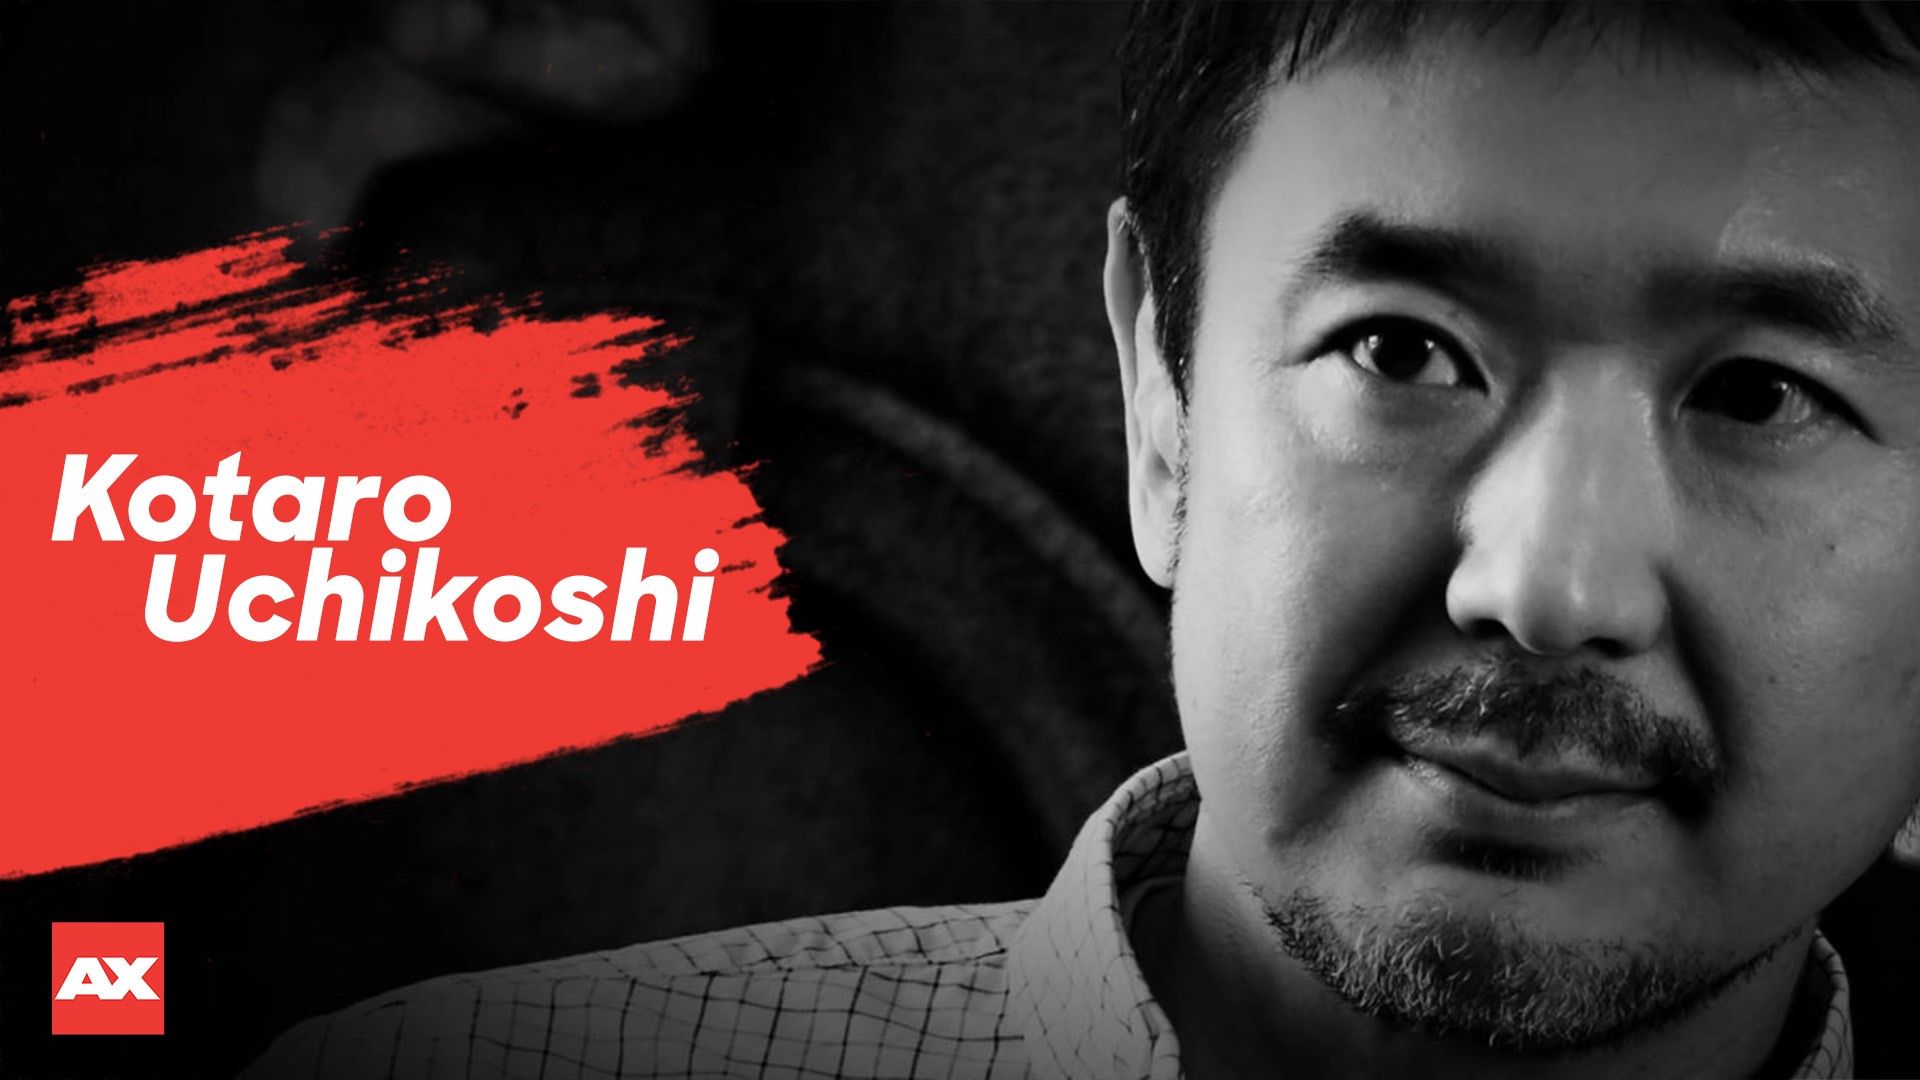 Kotaro Uchikoshi to Attend Panel at Anime Expo 2018